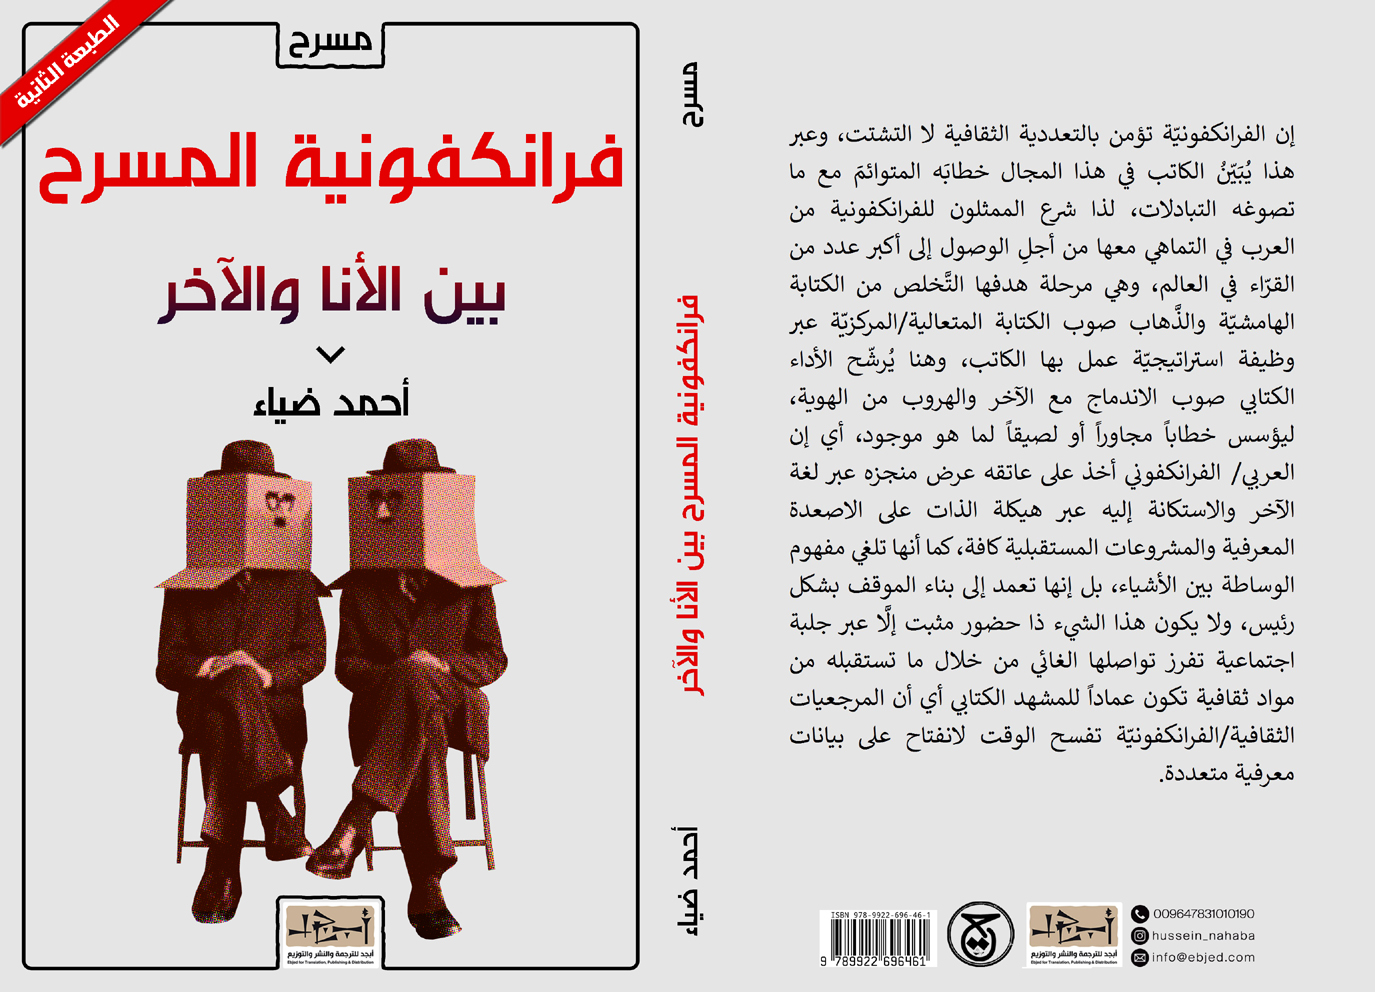 عنوان الكتاب: فرانكفونية المسرح - بين الأنا والآخر تأليف: الدكتور أحمد ضياء التصنيف: مسرح